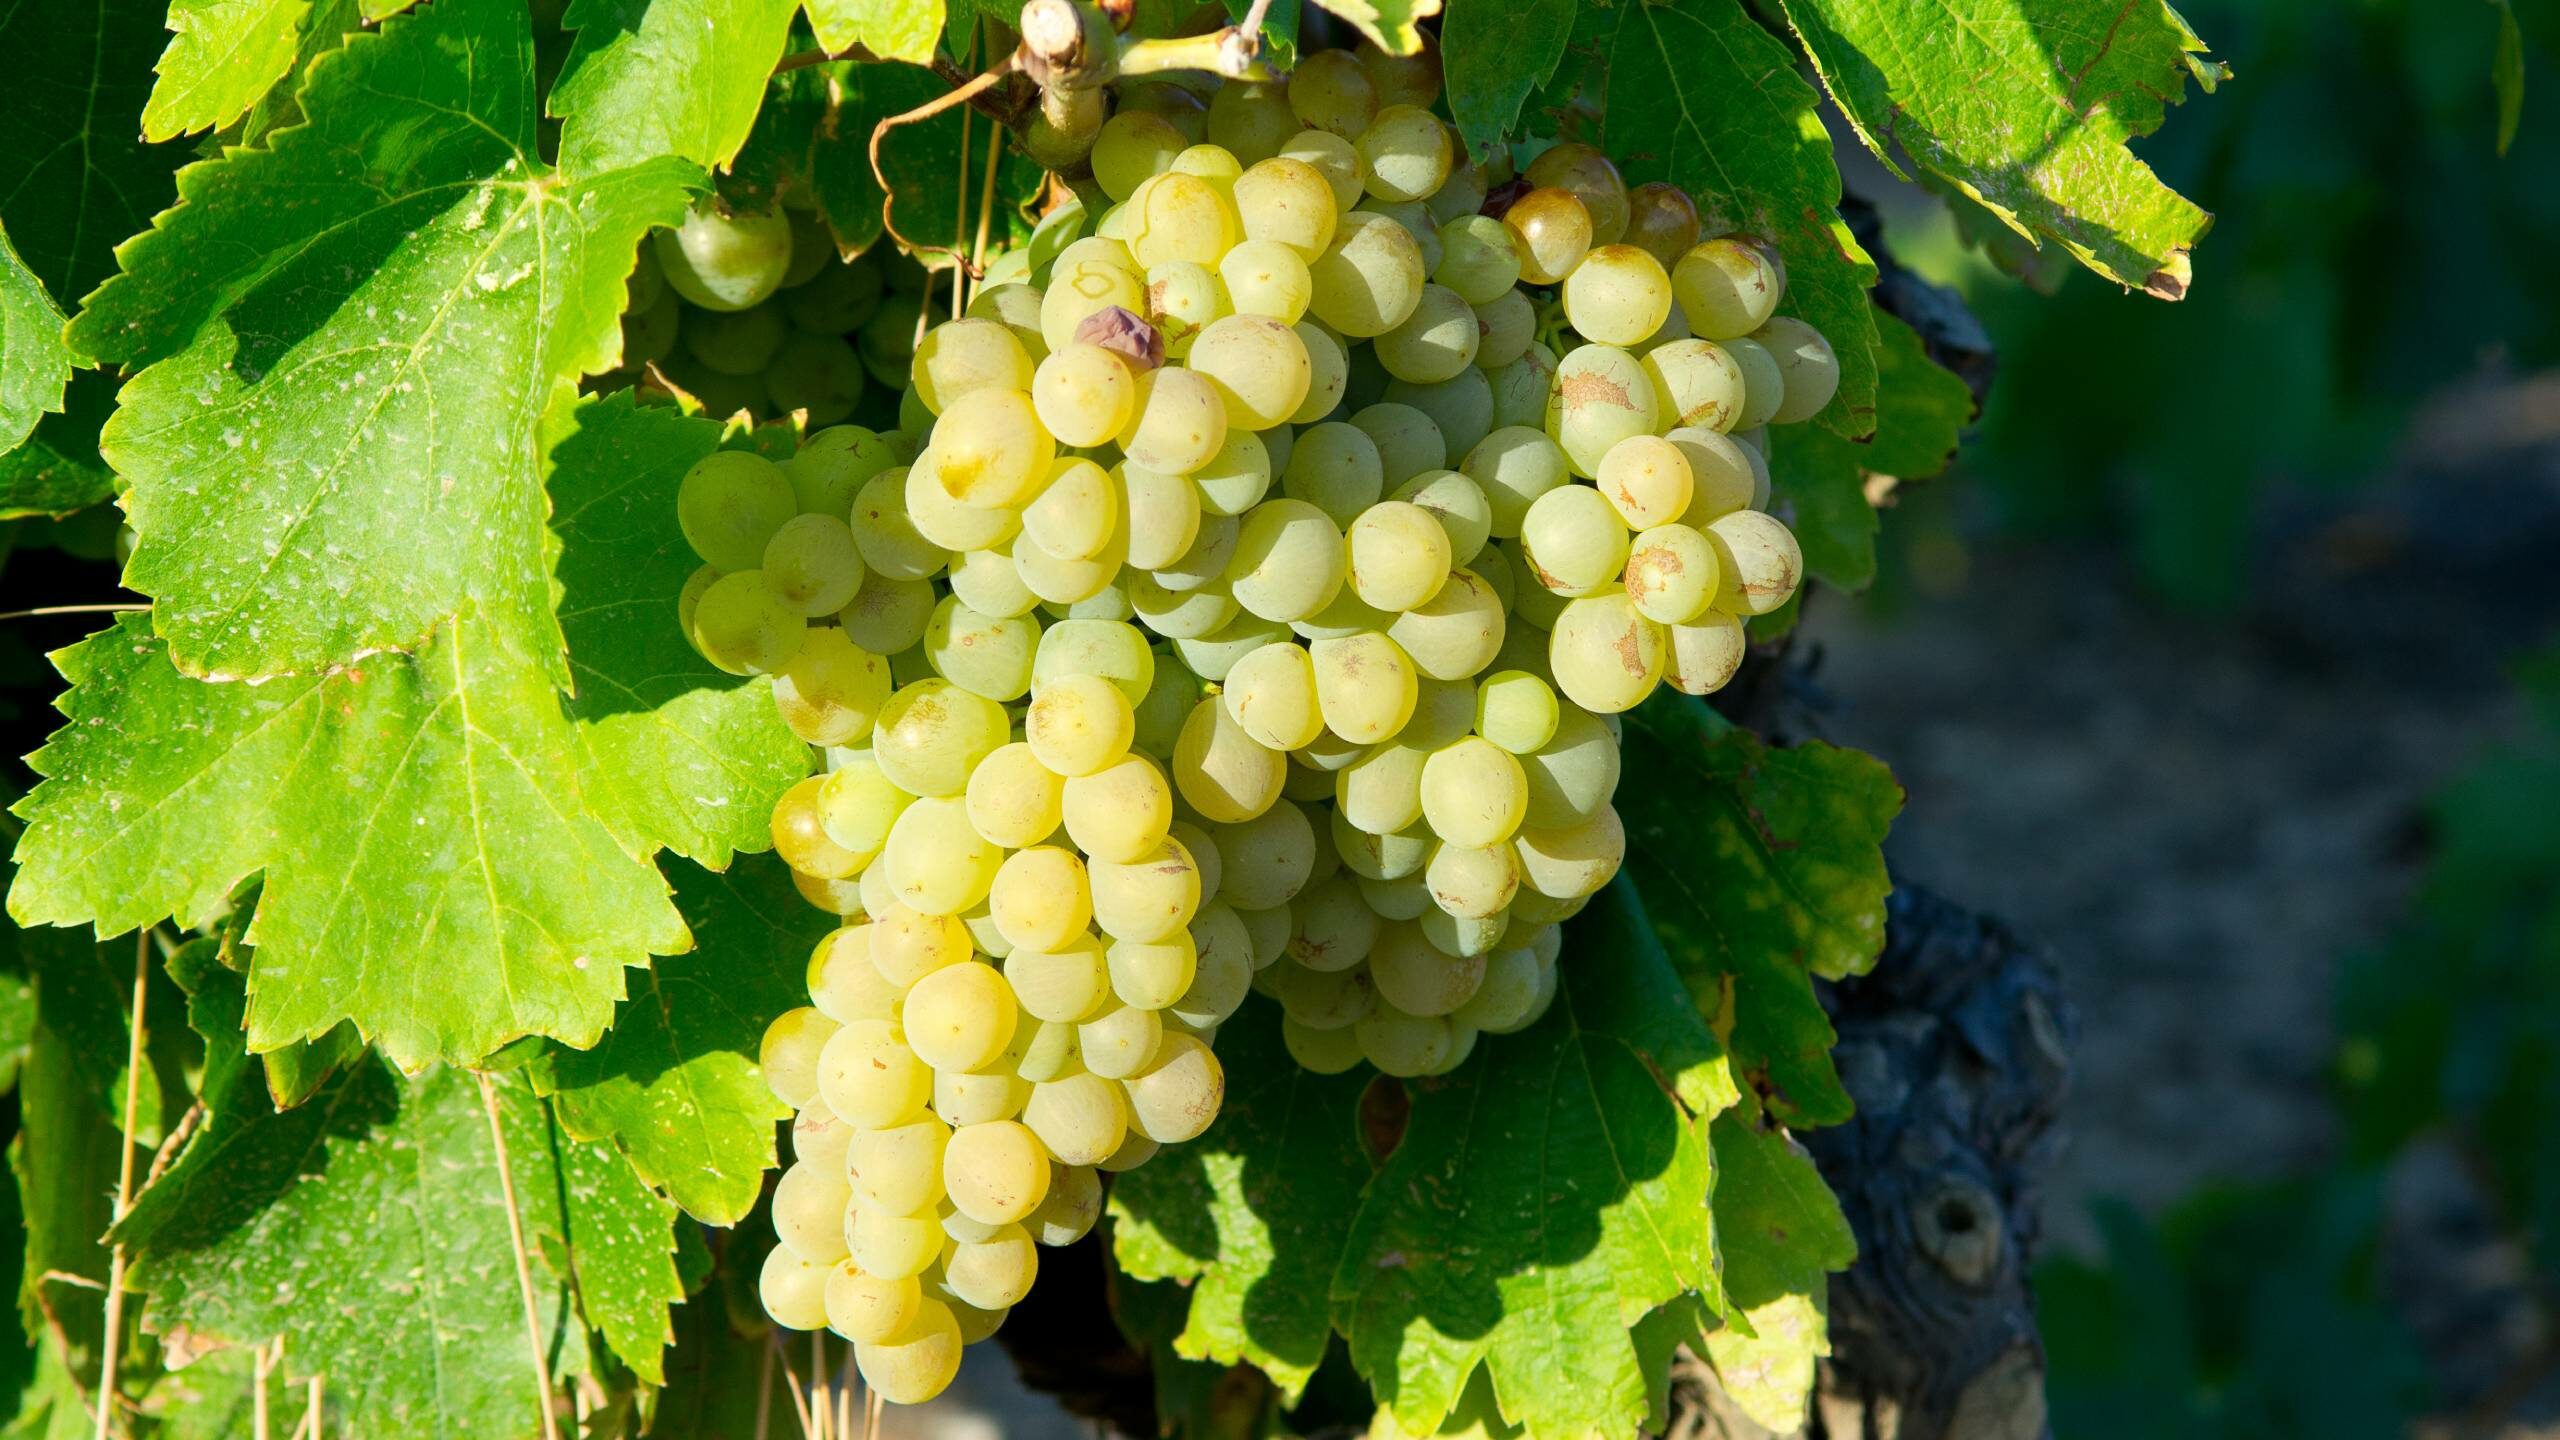 Garganega grapes on the vine in the sunshine